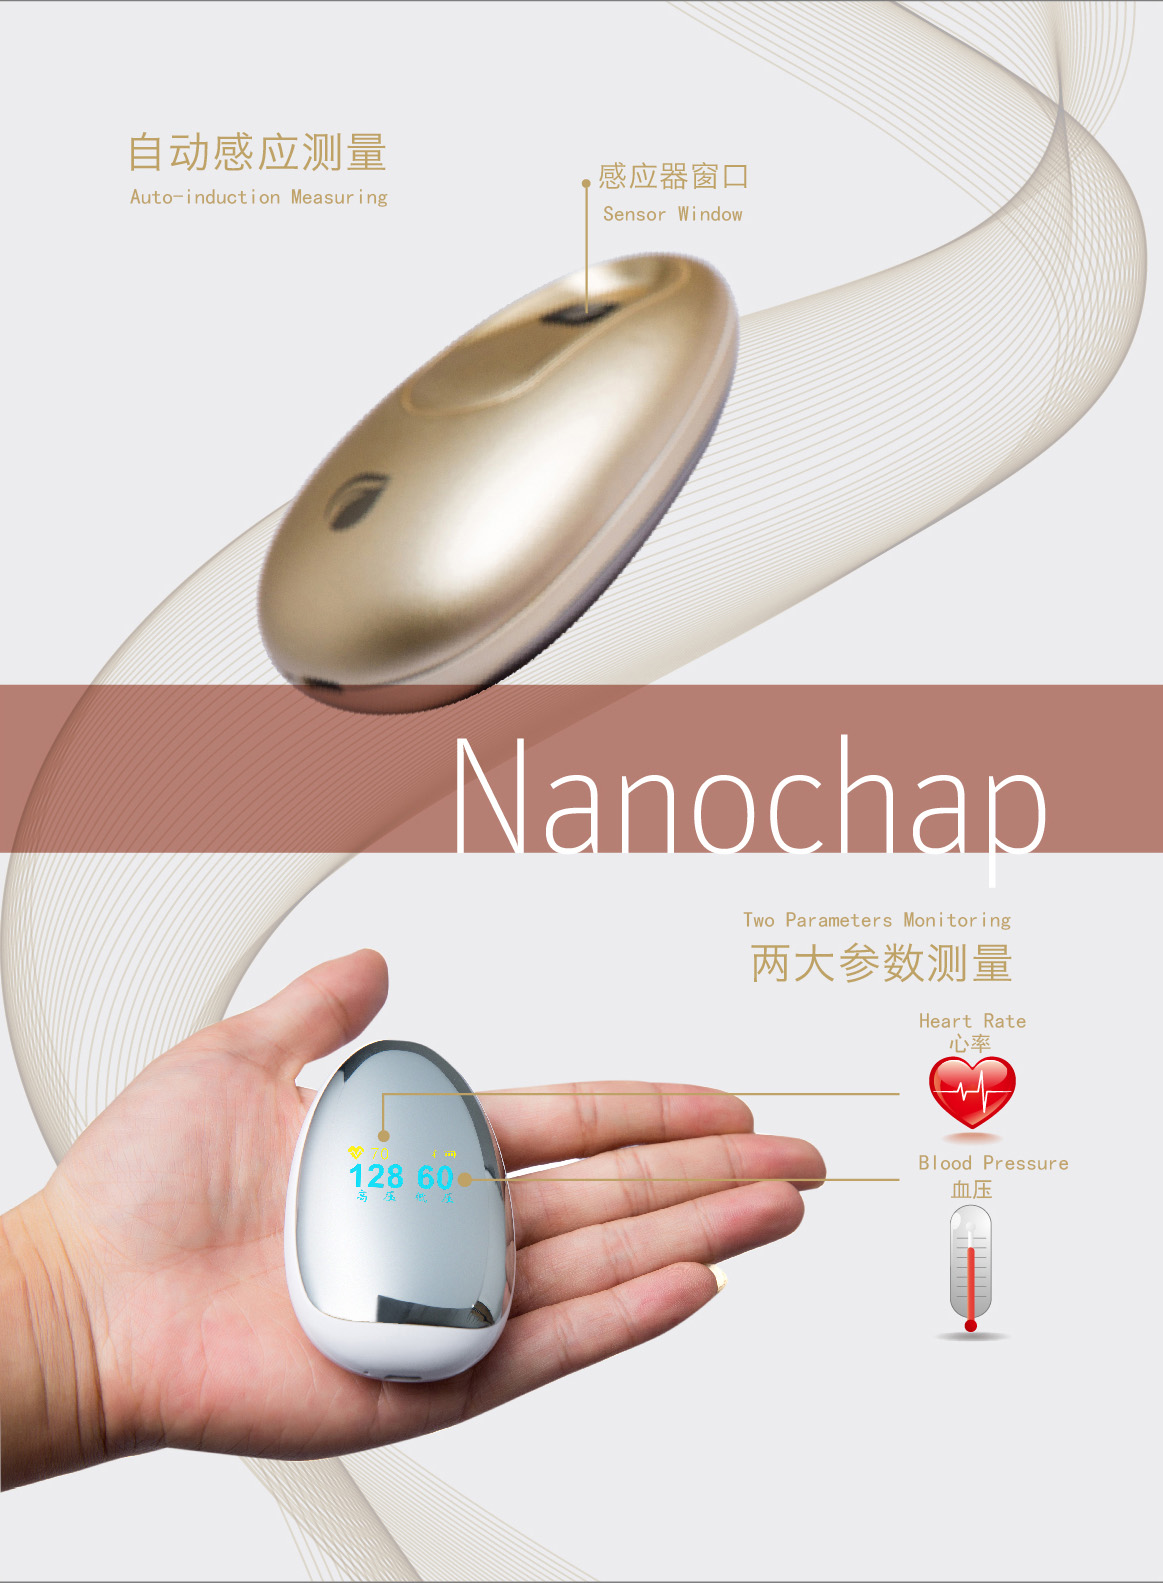 Nanochap暖芯迦mini Plus 智能 血压计(仪)